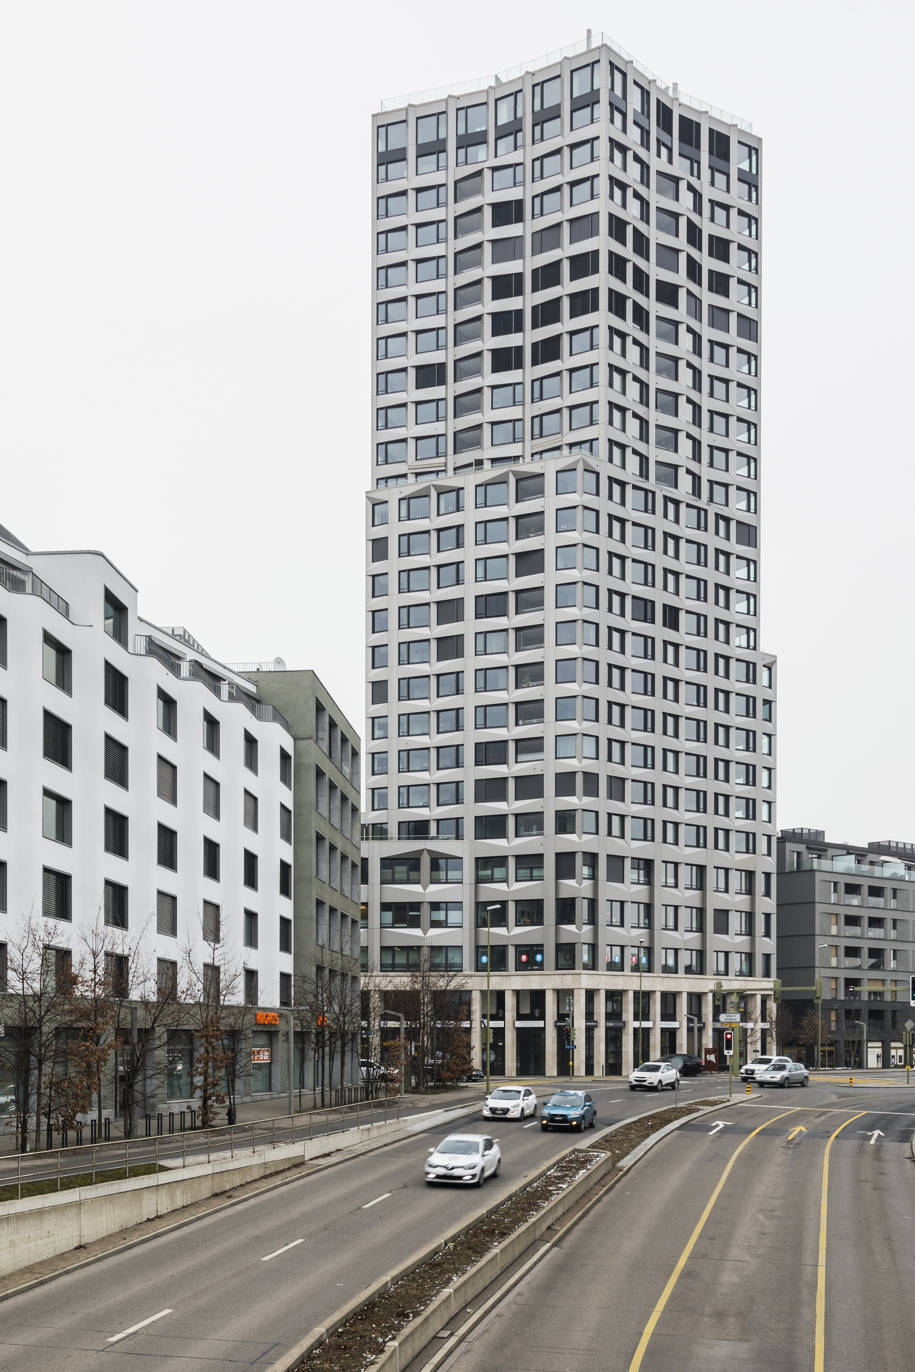 ZLT, Fluo architecture and design studio, aesthetic medical office, Limmat Tower, Dietikon, Zurich, Switzerland, 2018